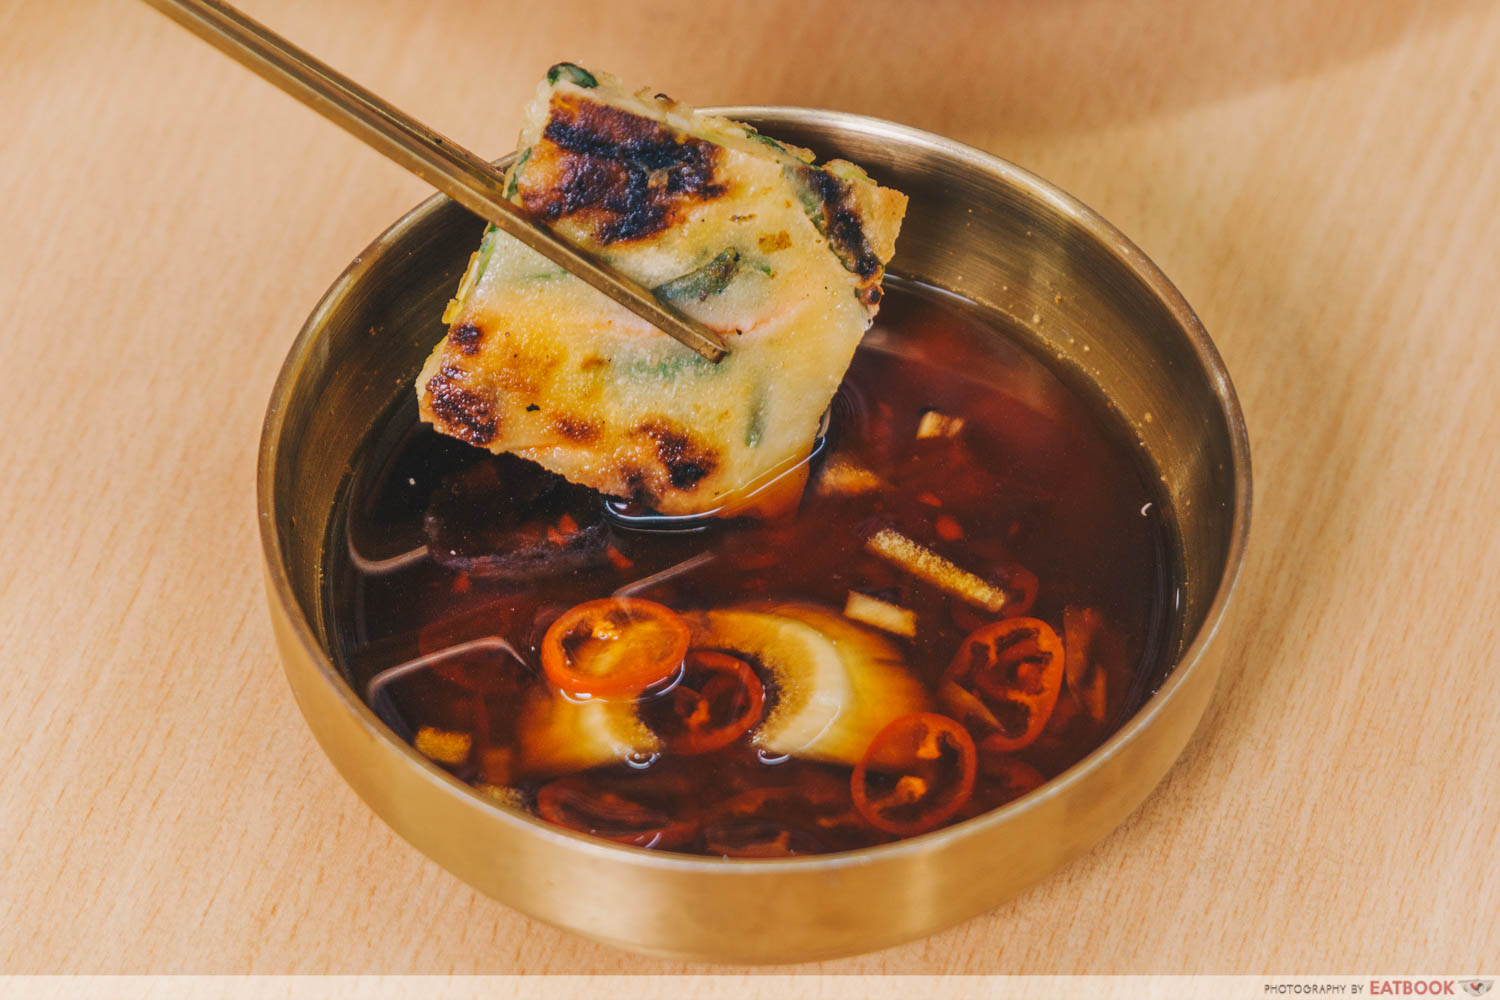 Annyeong Chicken - Seafood pancake dip